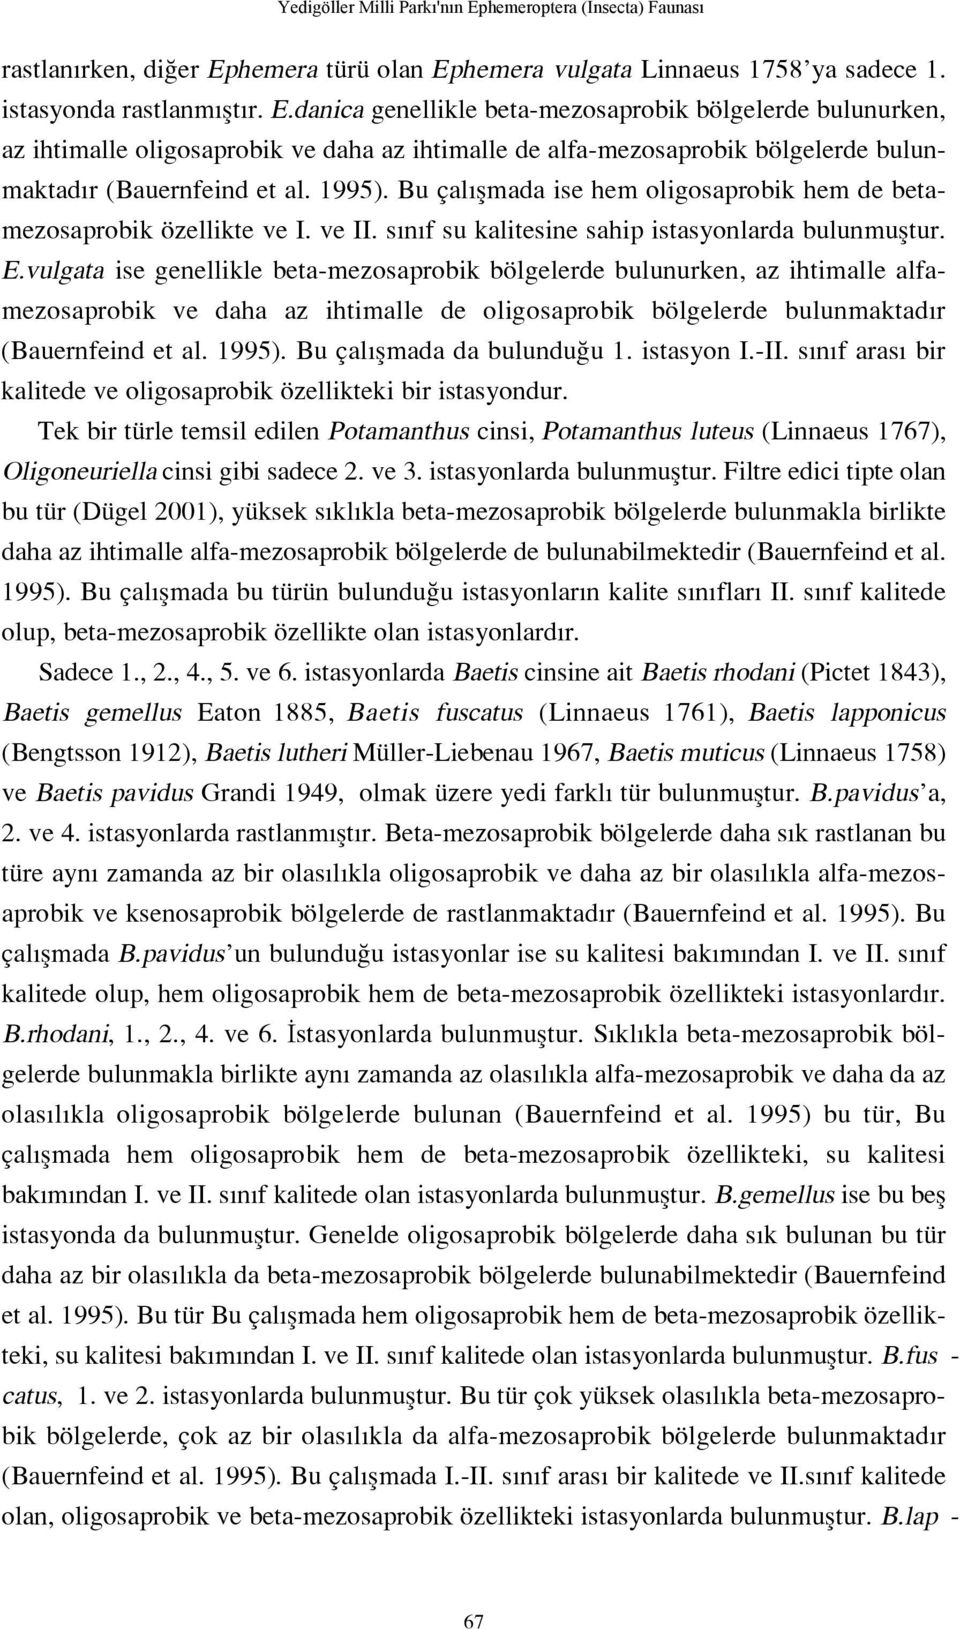 hemera türü olan Ephemera vulgata Linnaeus 1758 ya sadece 1. istasyonda rastlanm flt r. E.danica genellikle beta-mezosaprobik bölgelerde bulunurken, az ihtimalle oligosaprobik ve daha az ihtimalle de alfa-mezosaprobik bölgelerde bulunmaktad r (Bauernfeind et al.